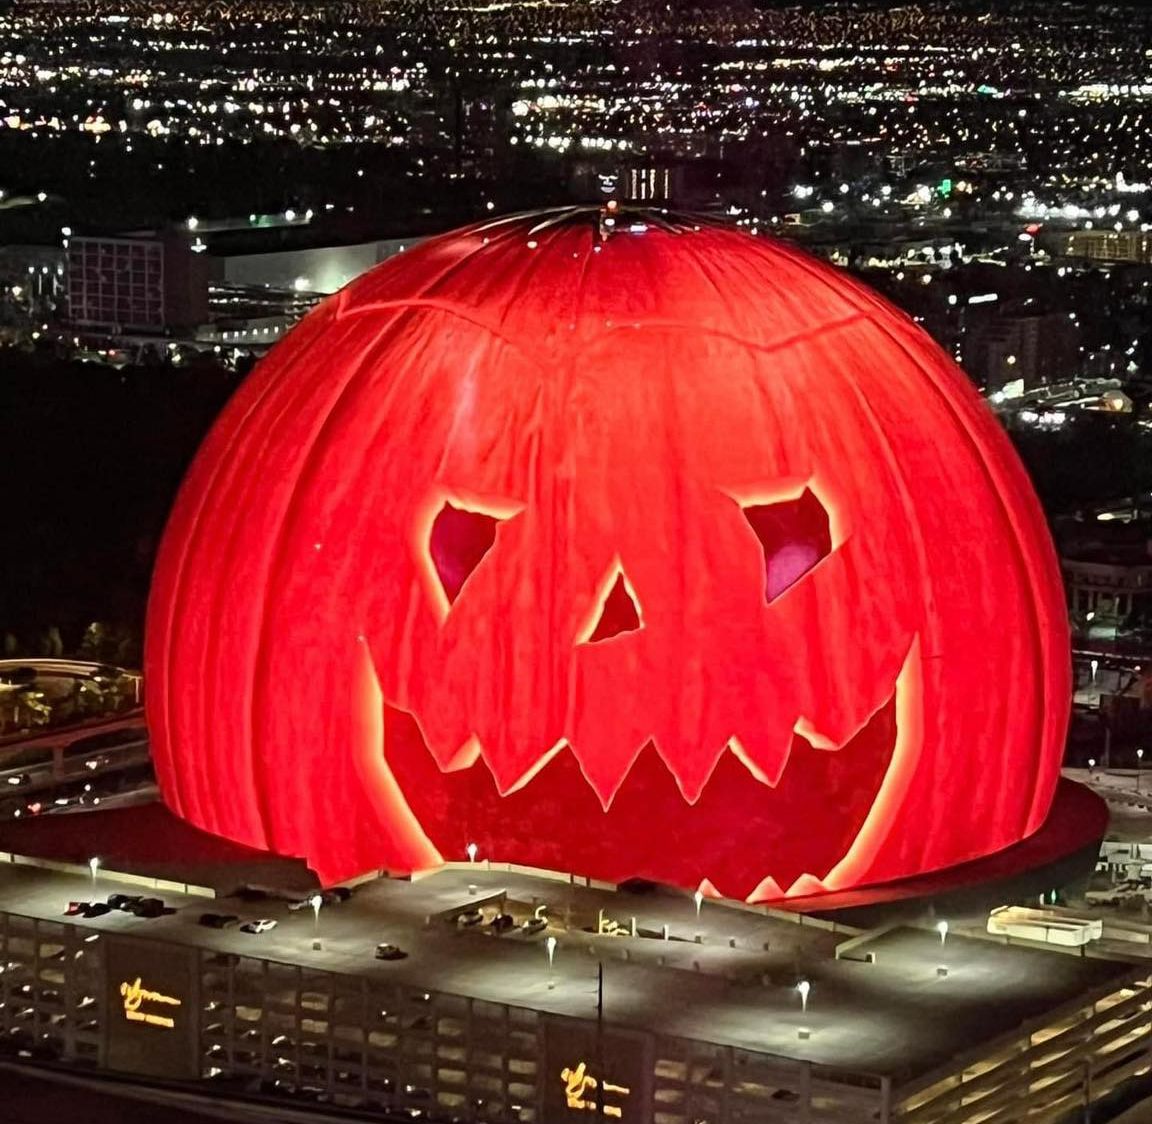 Vegas-Pumpkin-Sphere-by-Ric-Kearbey image